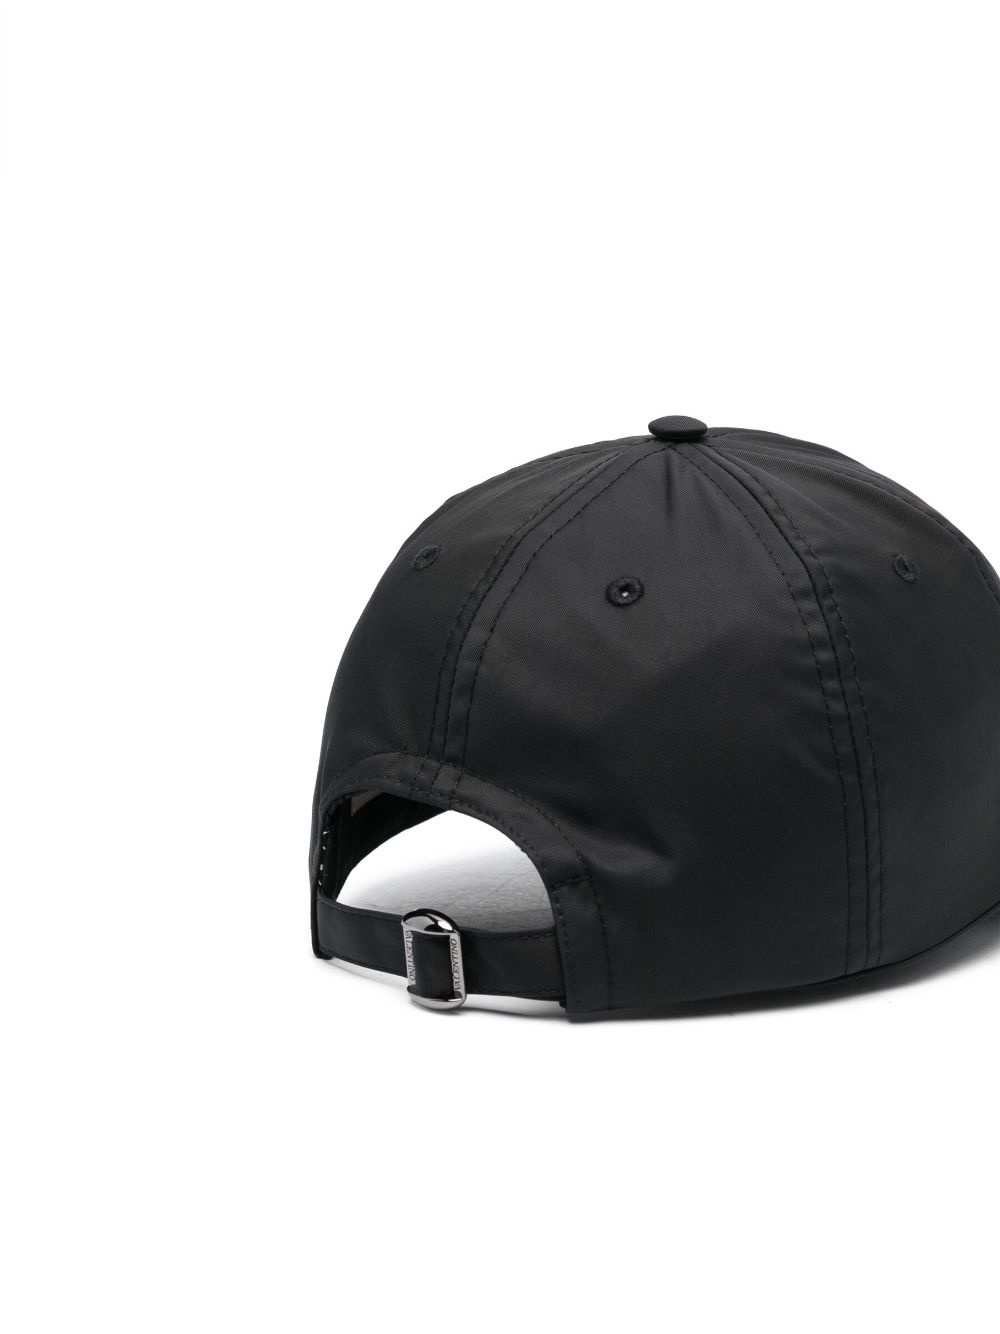 VLogo cotton baseball cap - 2